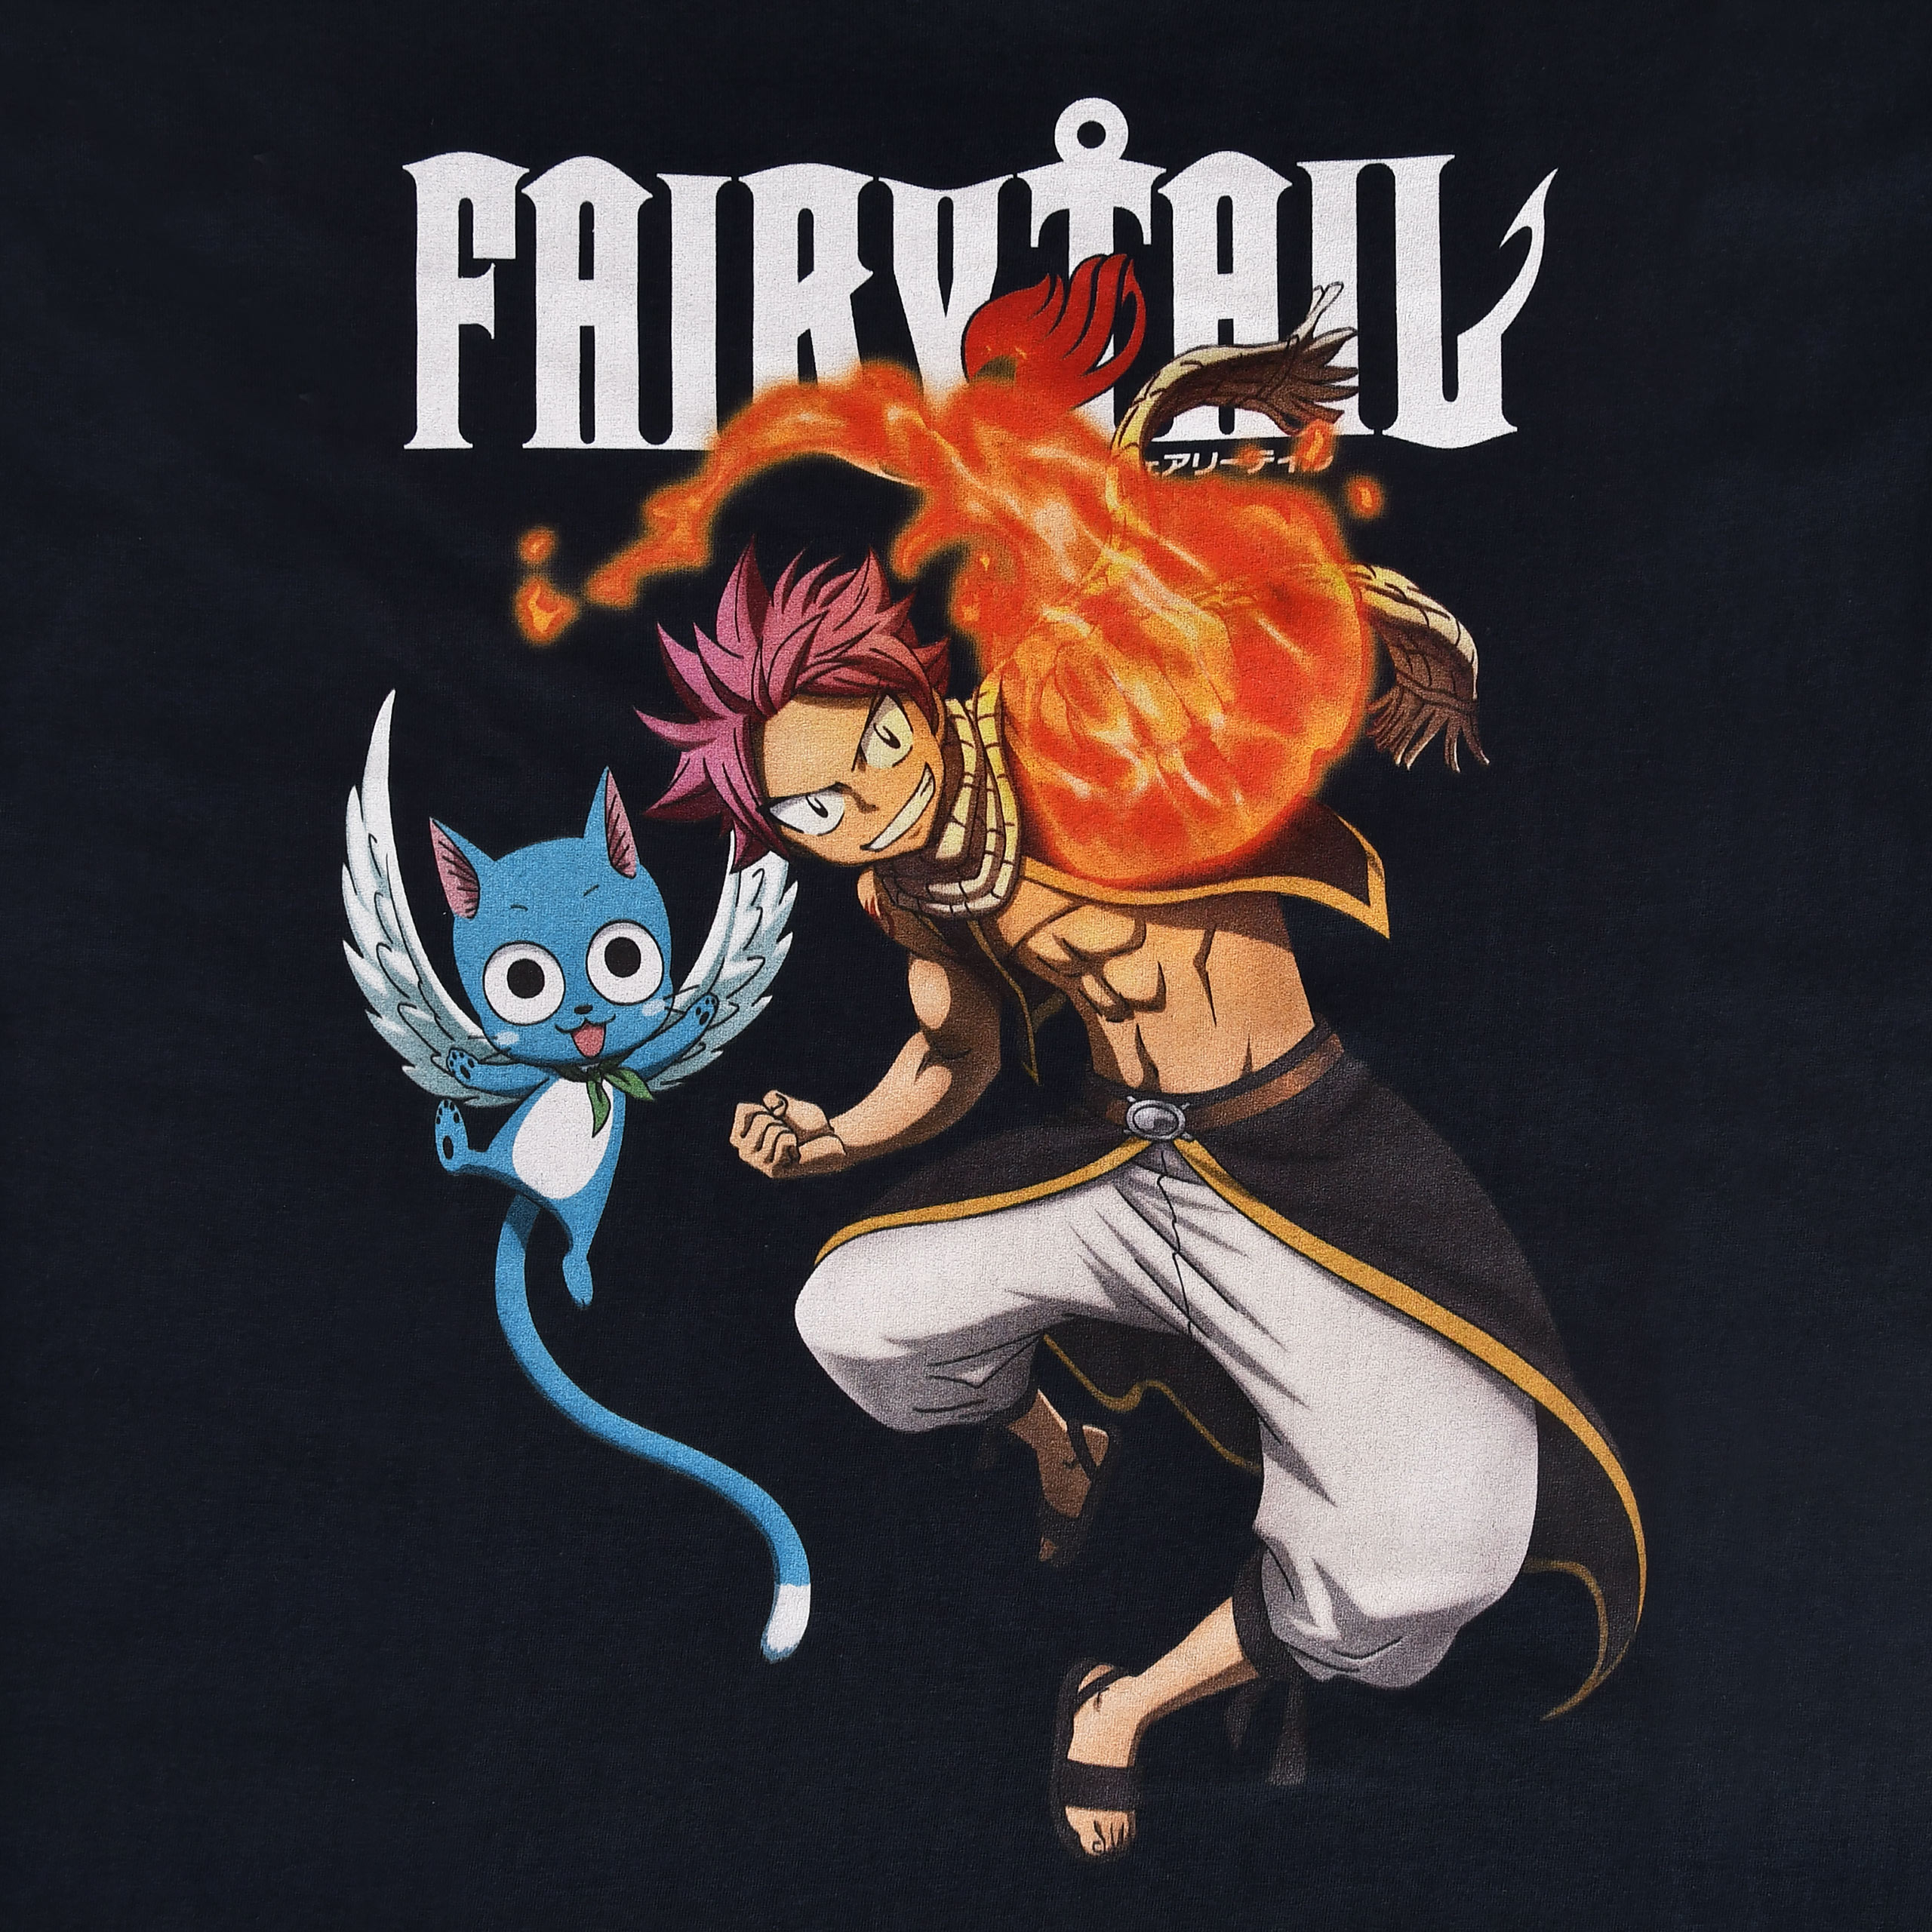 Fairy Tail - Natsu und Happy T-Shirt blau